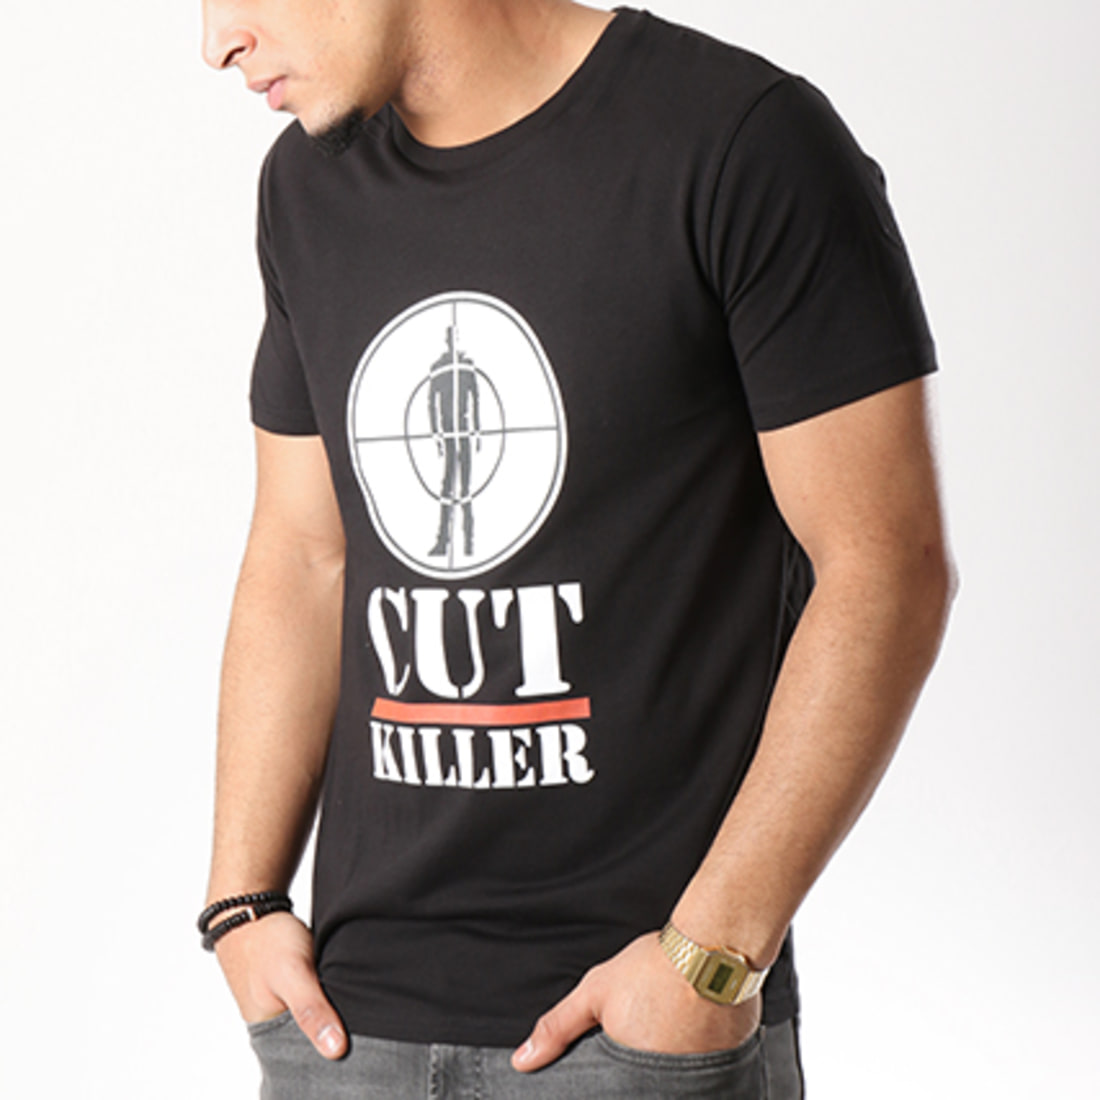 Cut Killer Tee Shirt Public Killer Noir LaBoutiqueOfficielle com